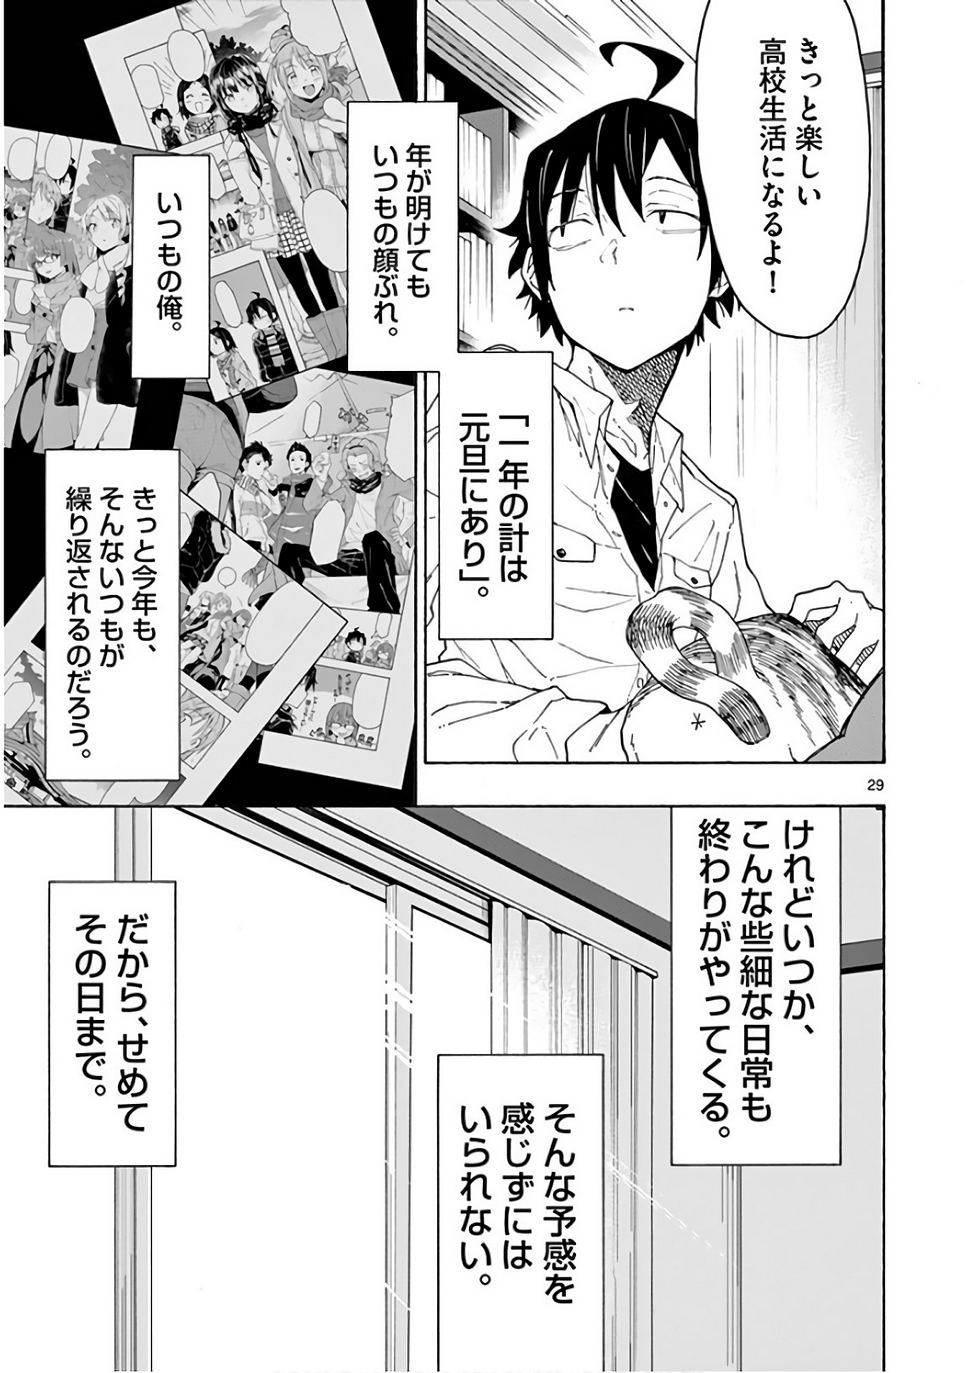 Yahari Ore no Seishun Rabukome wa Machigatte Iru. @ Comic - Chapter 73 - Page 29